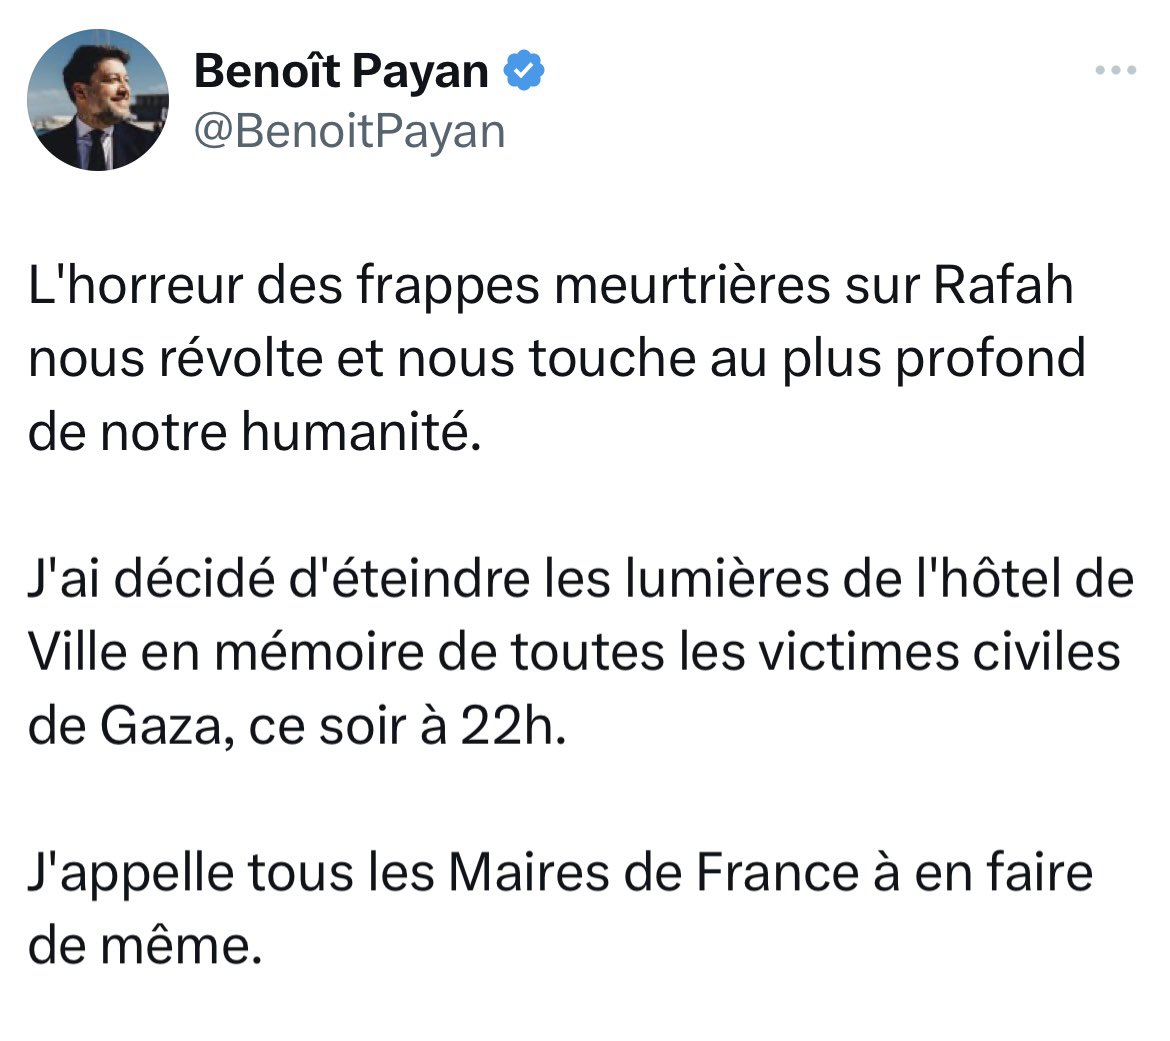 J’aurais aimé que vous fassiez pareil pour les Ouïghours @BenoitPayan: 
« Les mesures de répression contre les musulmans du Xinjiang s’apparentent à des crimes contre l’humanité
Des centaines de milliers d’hommes et de femmes musulmane internés et torturés »
Pas votre électorat🤫